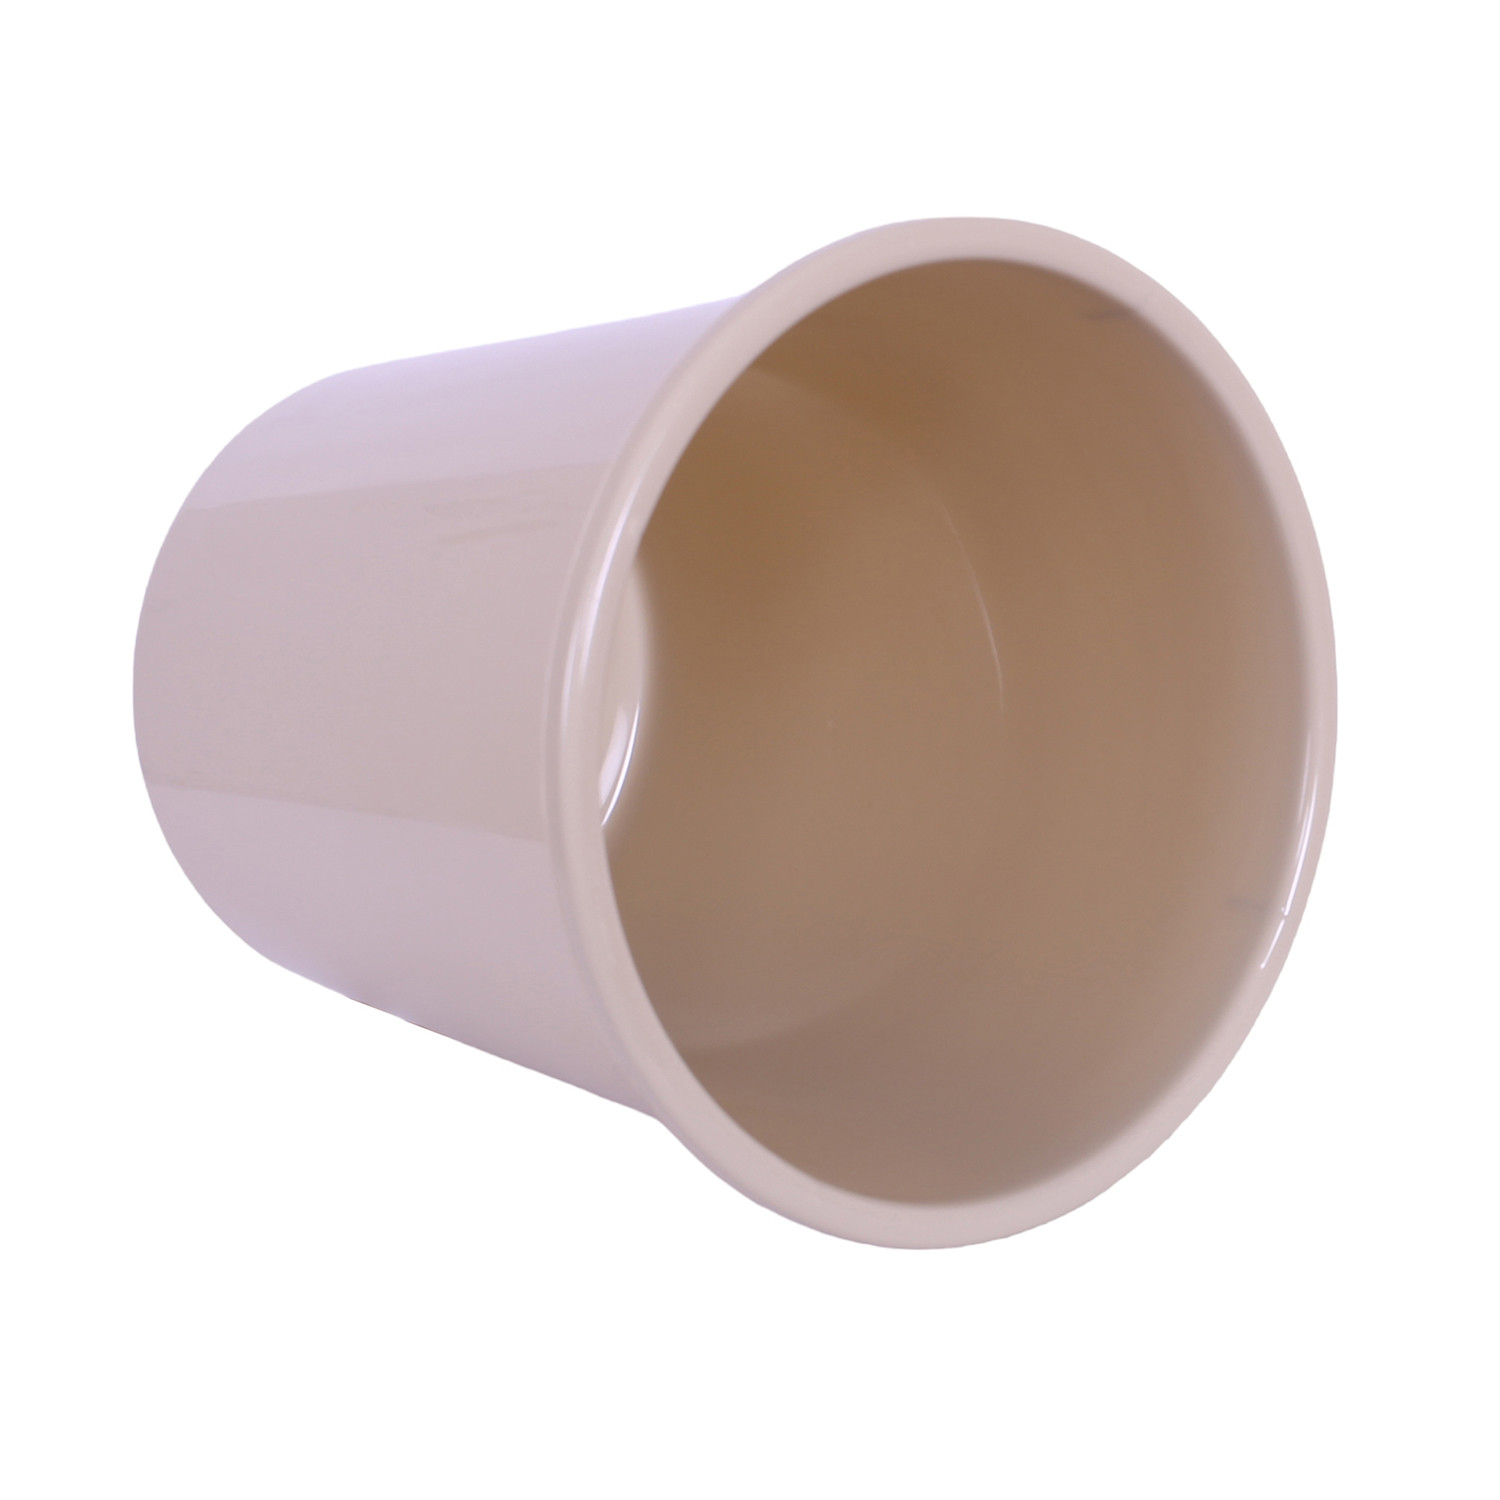 Kuber Industries Dustbin | Open Dustbin | Plastic Garbage Dustbin | Dustbin For Kitchen | Dustbin For Bathroom | Office Dustbin | Plain Sada Dustbin | 10 LTR | Pack of 3 | Multi